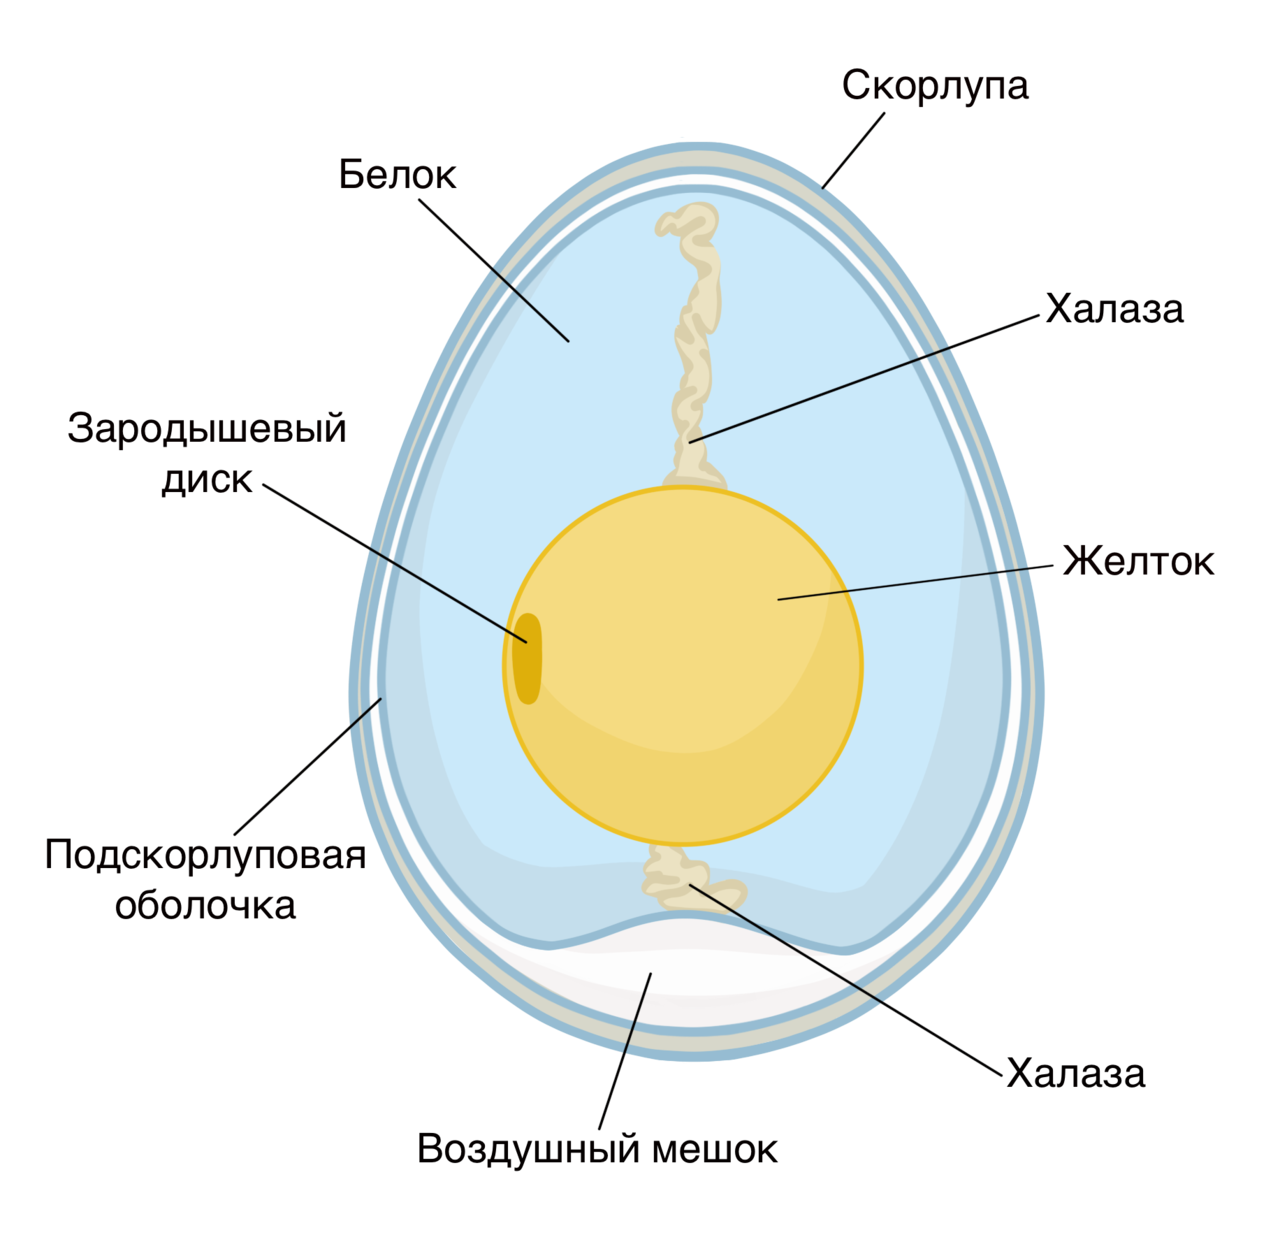 Яйцо птицы биология